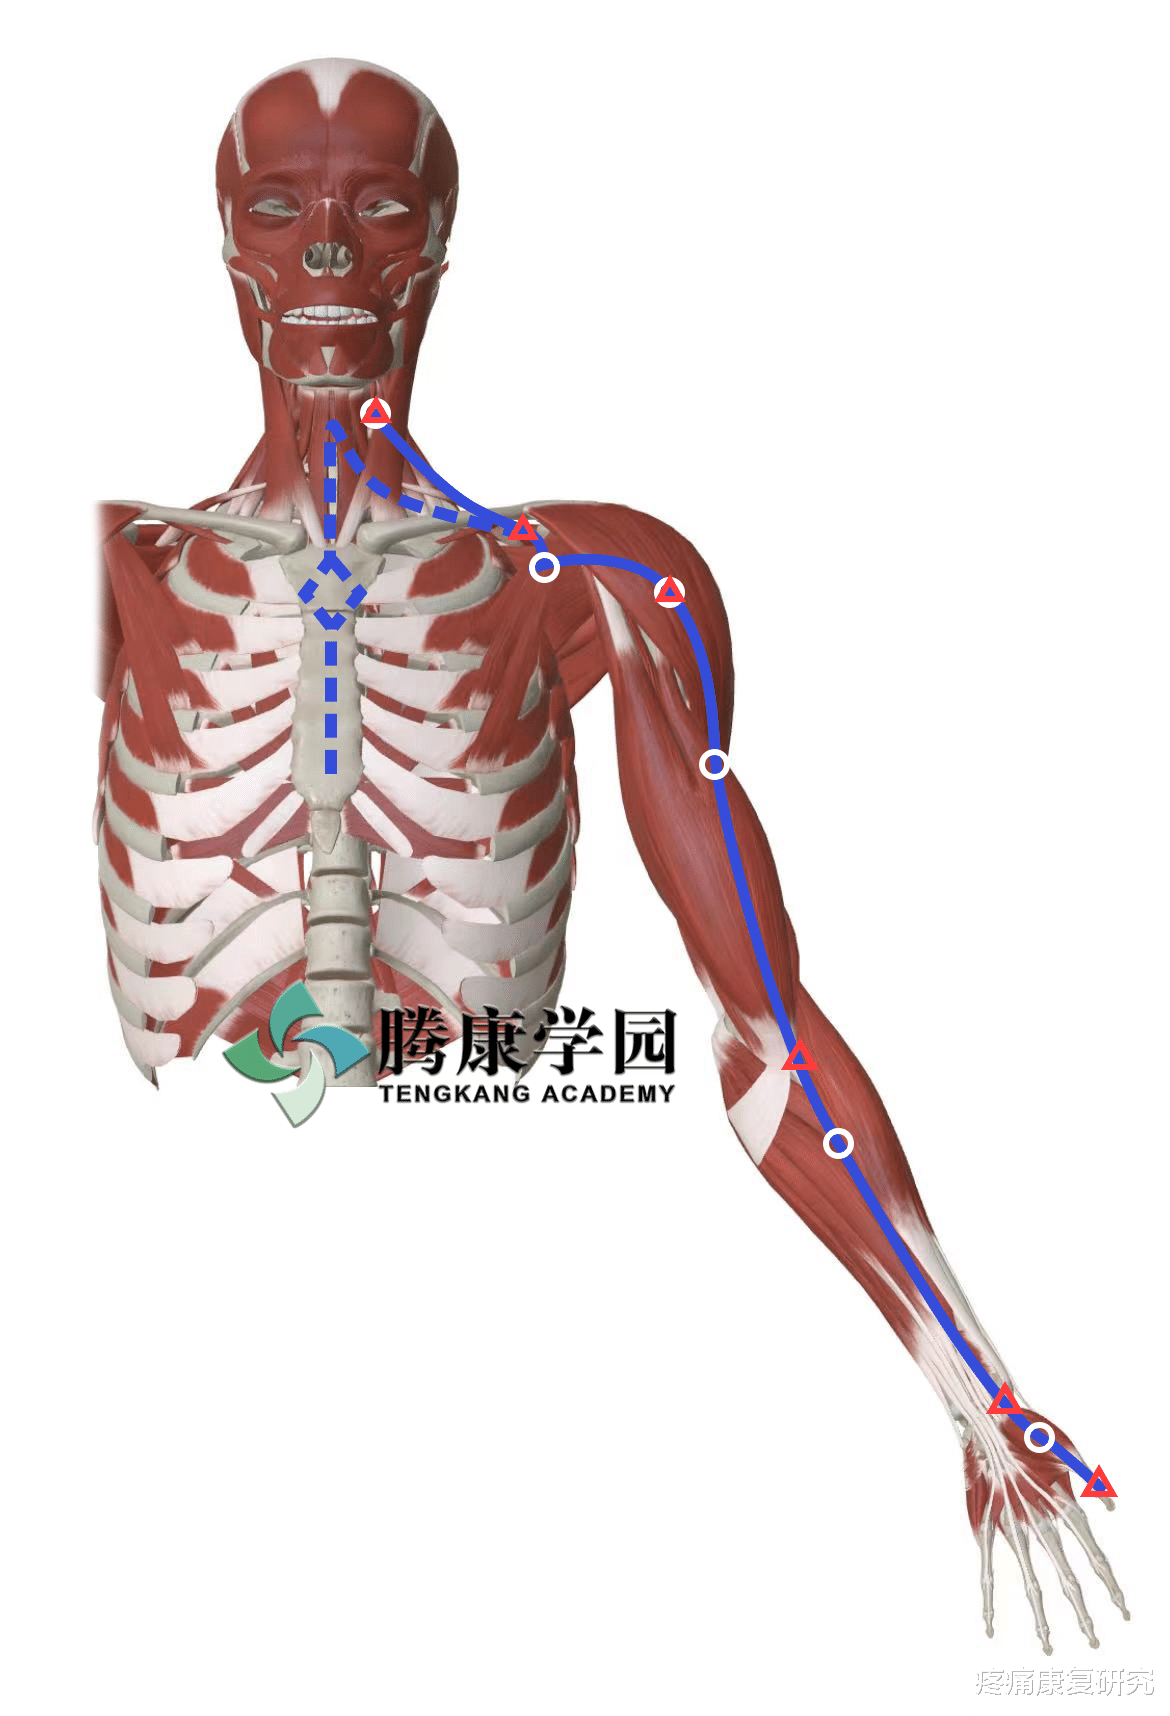 经络|【筋膜线与经络】上肢前向筋膜线与手太阴肺经